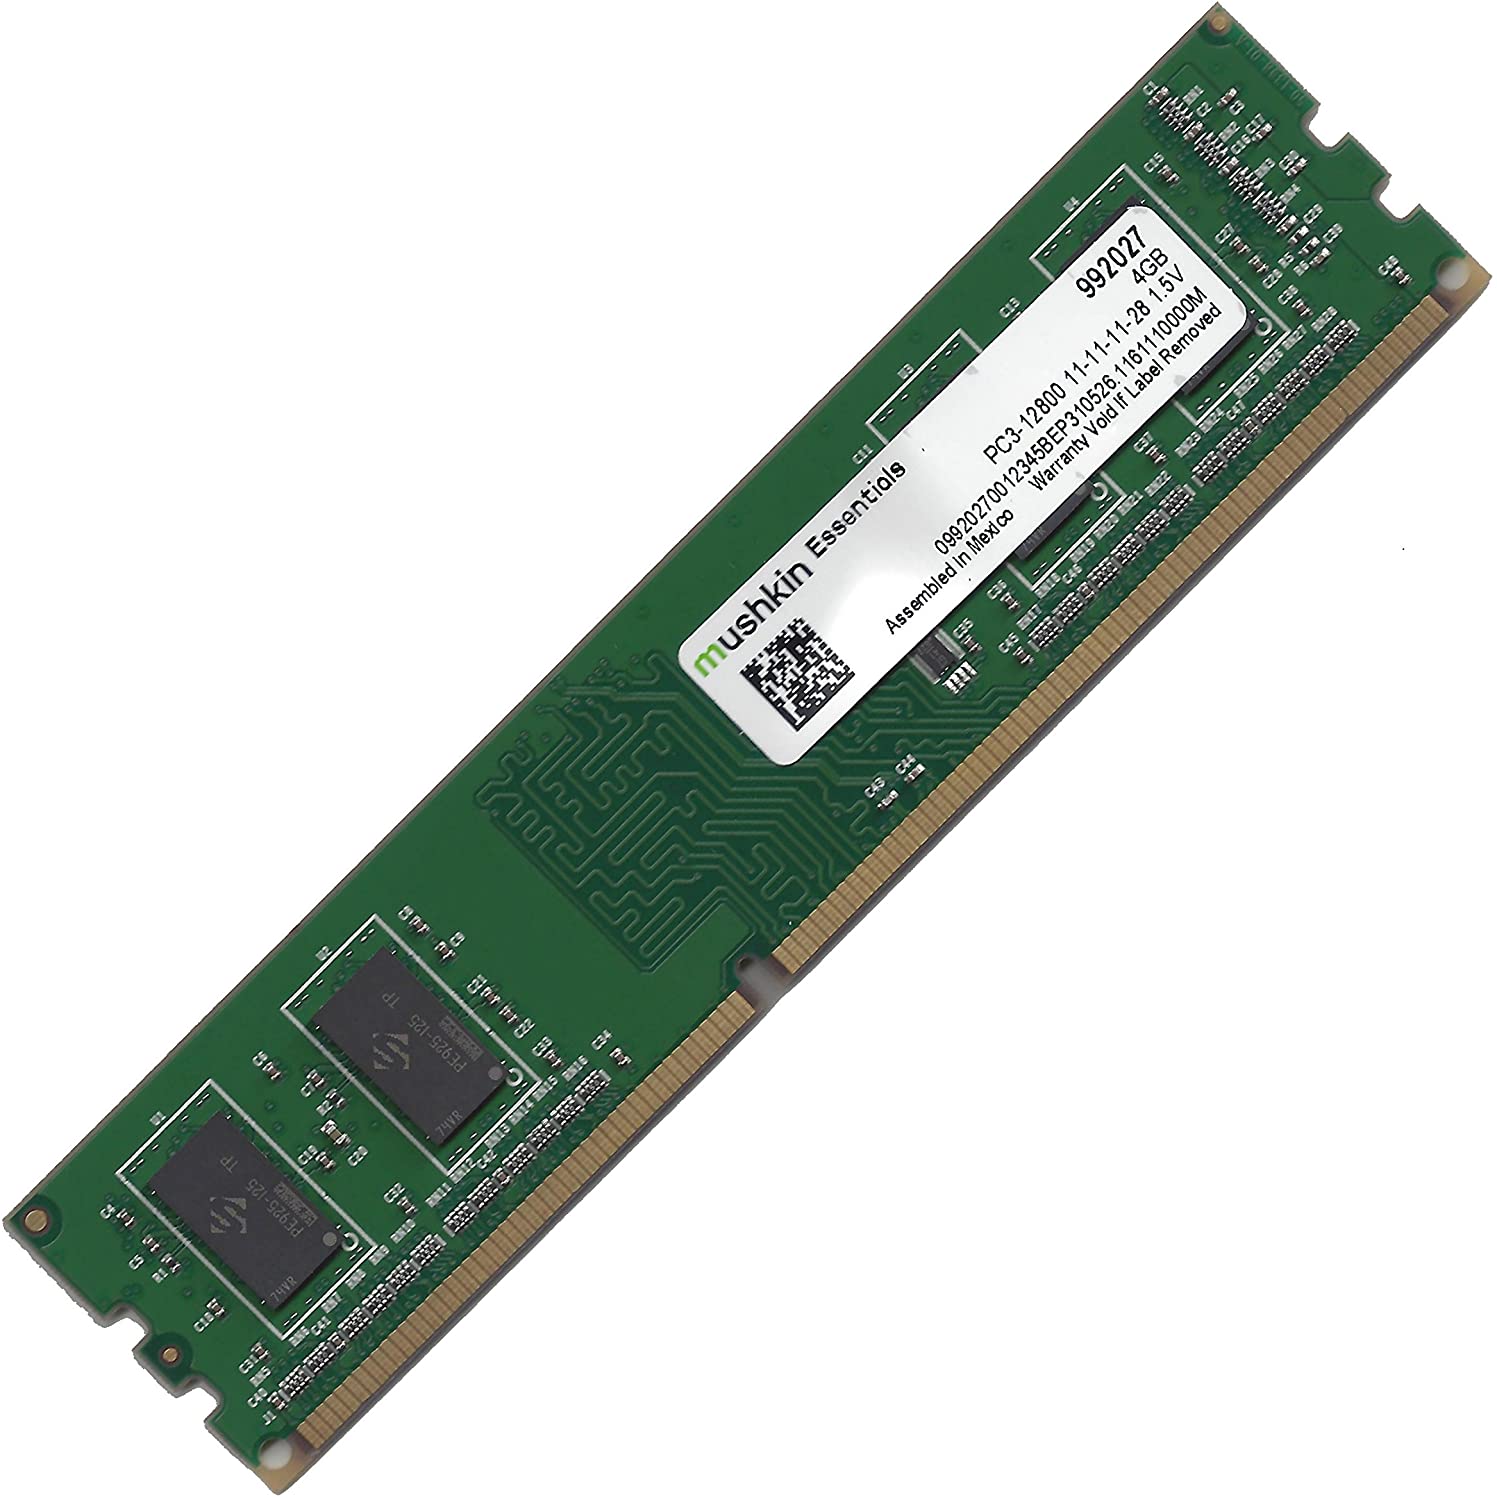 Leyes y regulaciones Touhou base Memoria RAM Mushkin DDR3 1600Mhz 4GB